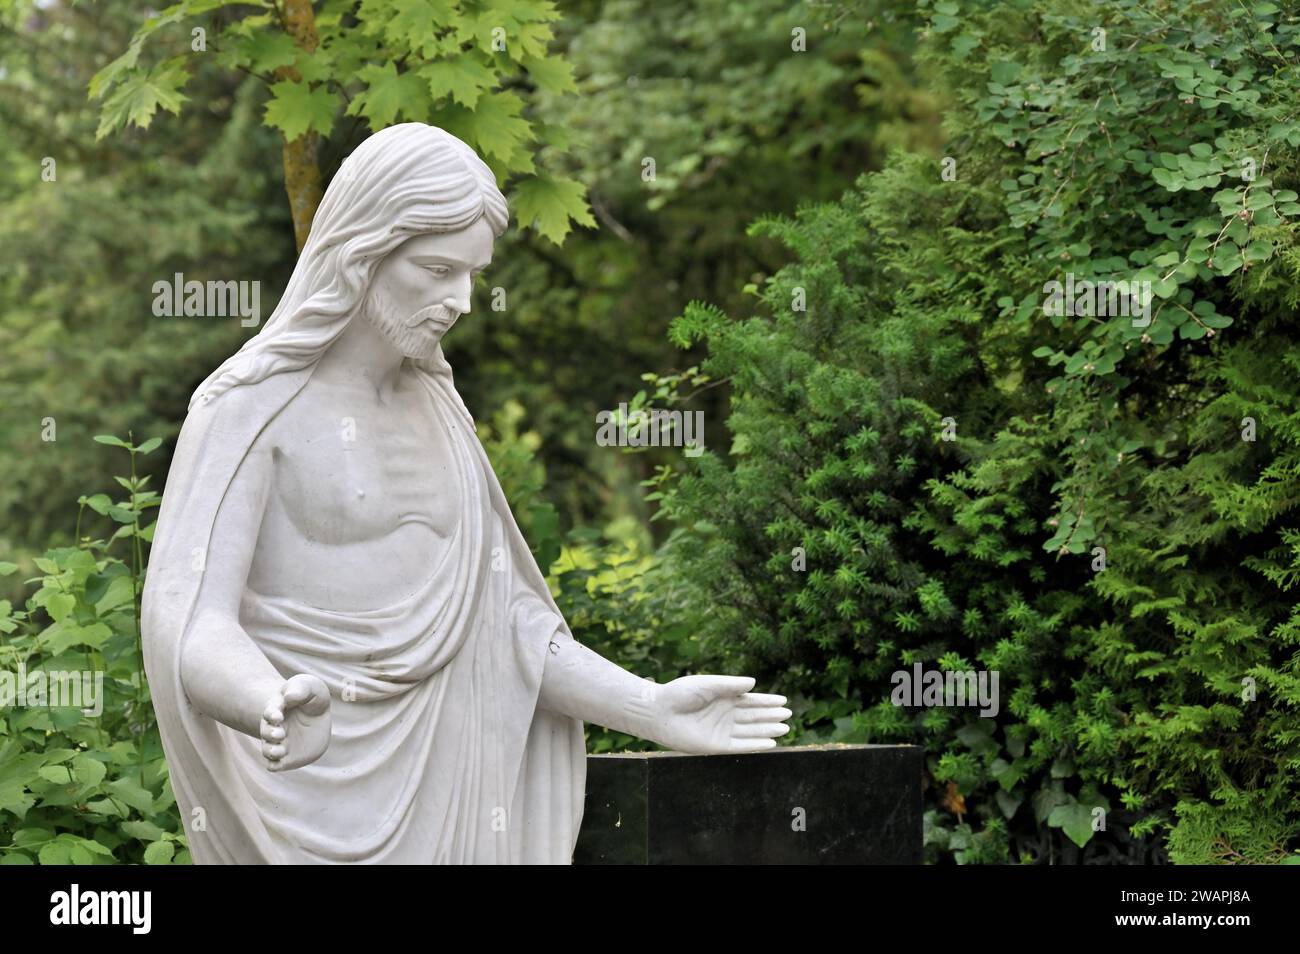 Statua bianca di Cristo con le mani tese di fronte al verde fogliame Foto Stock